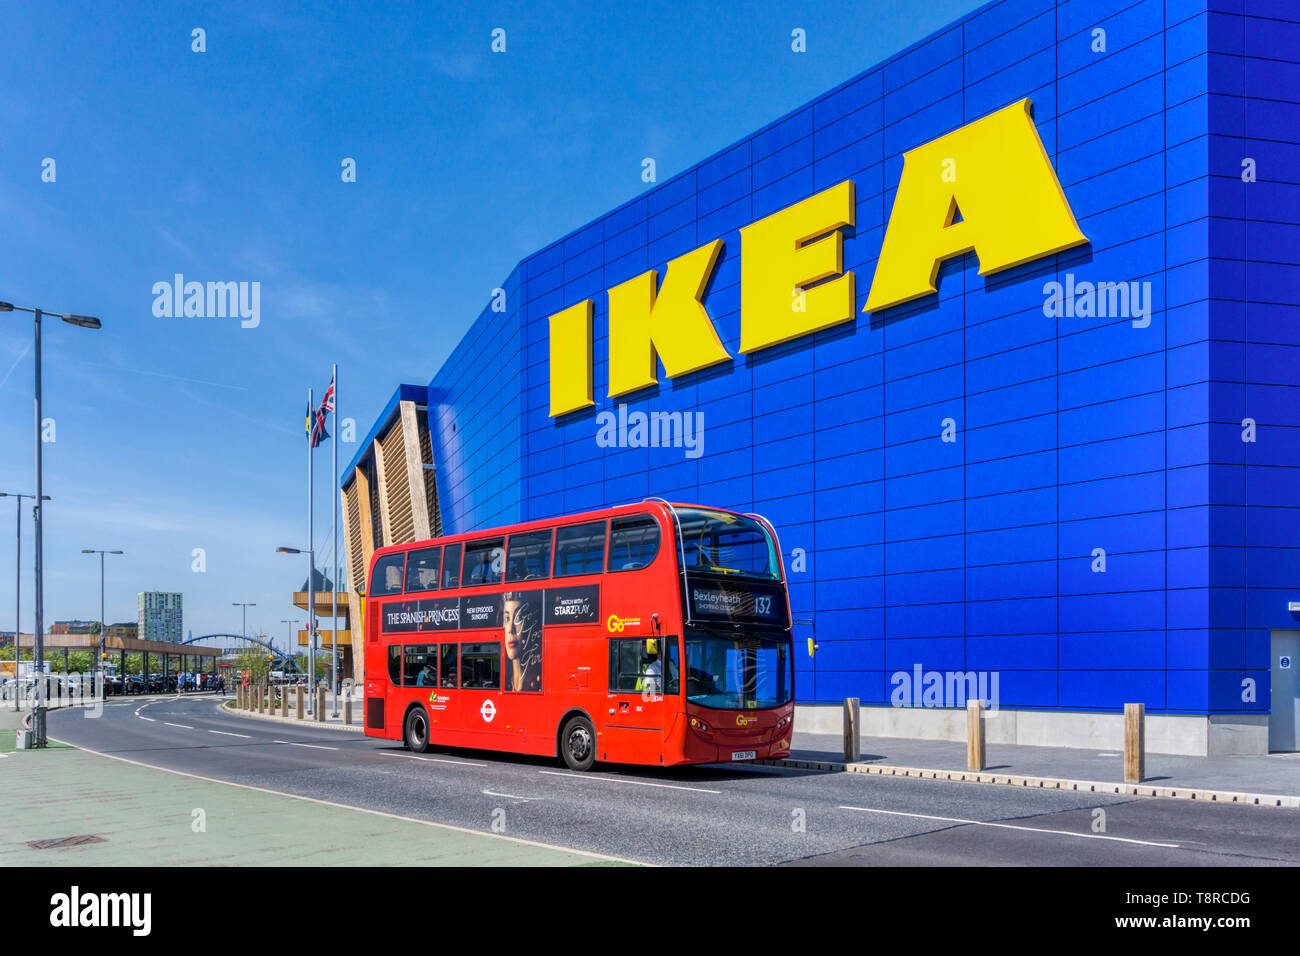 Ikea construction immagini e fotografie stock ad alta risoluzione - Alamy